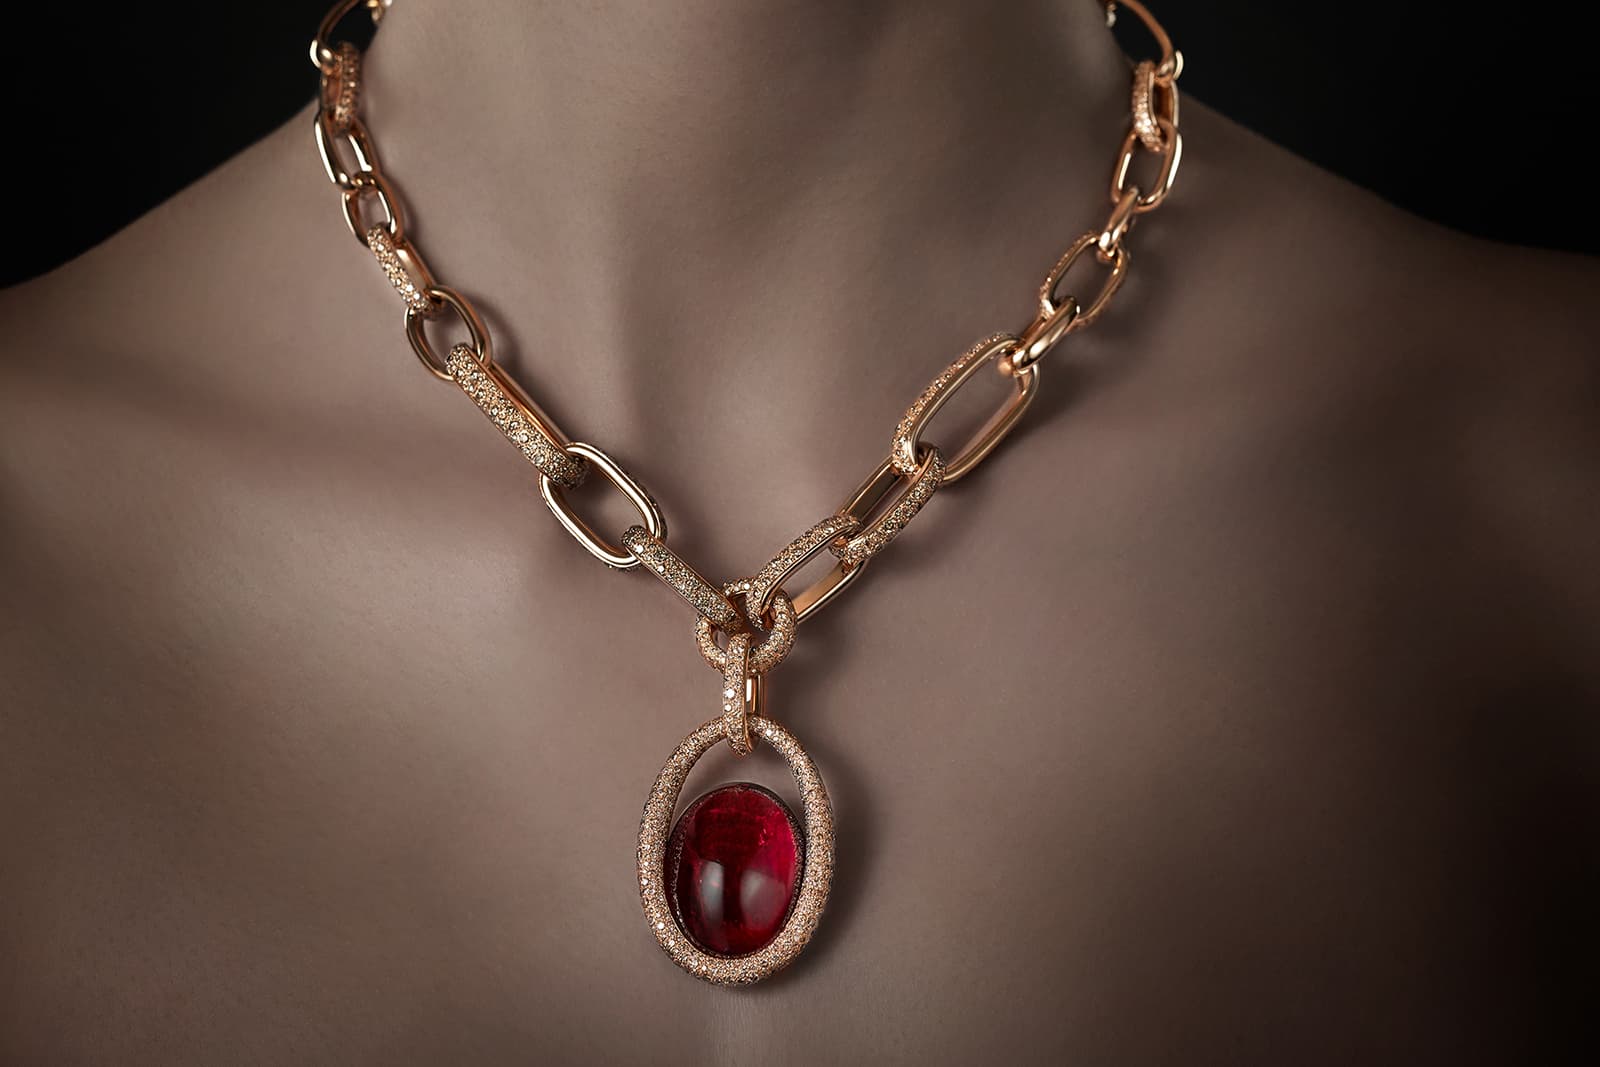 La Gioia di Pomellato Princess Chain necklace with a 58.5 carat tourmaline and cognac diamonds in yellow gold